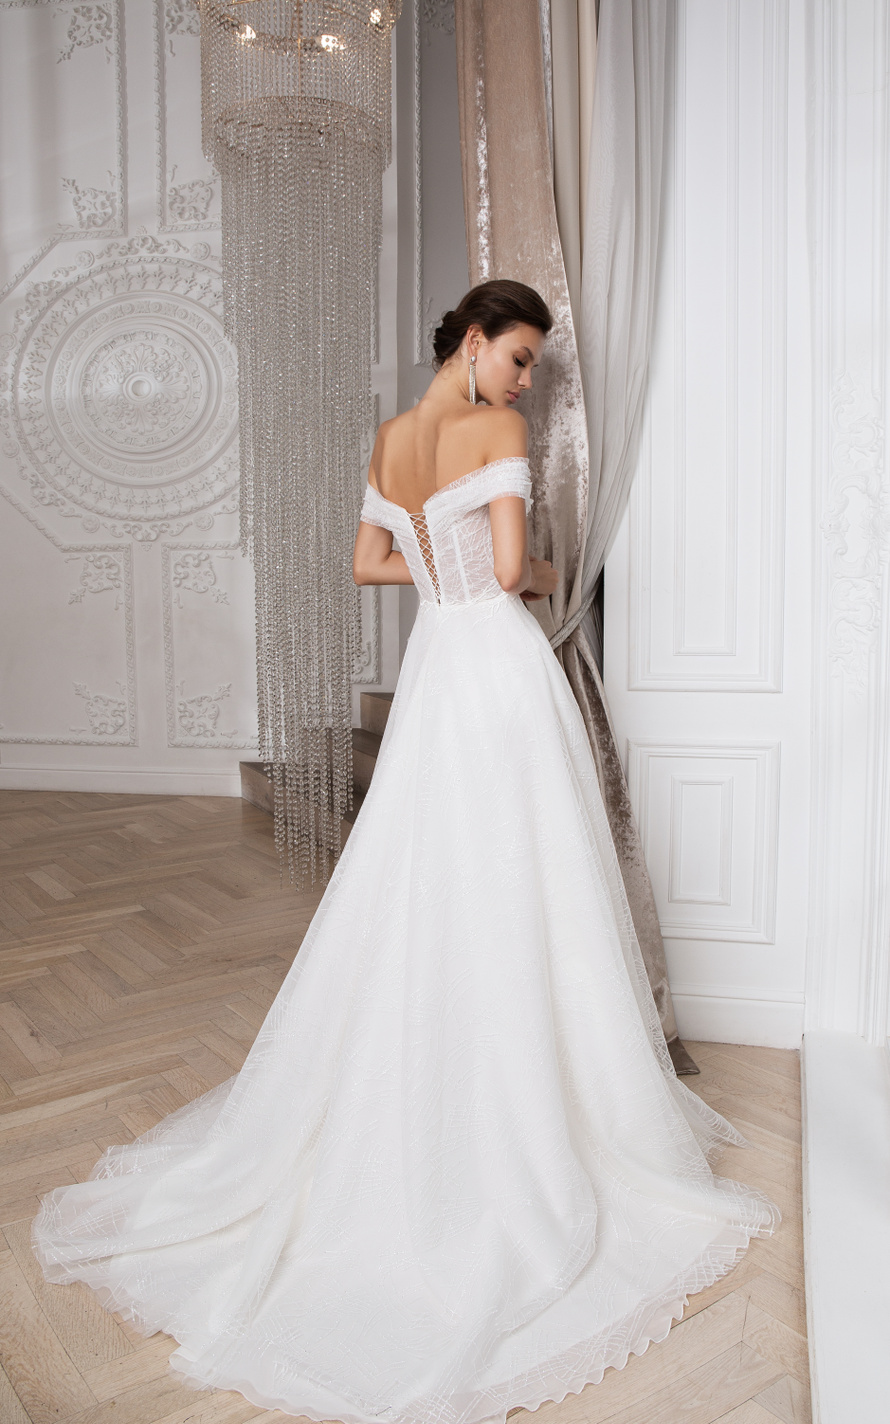 Купить свадебное платье «Ричи» Мэрри Марк из коллекции 2020 года в Екатеринбурге